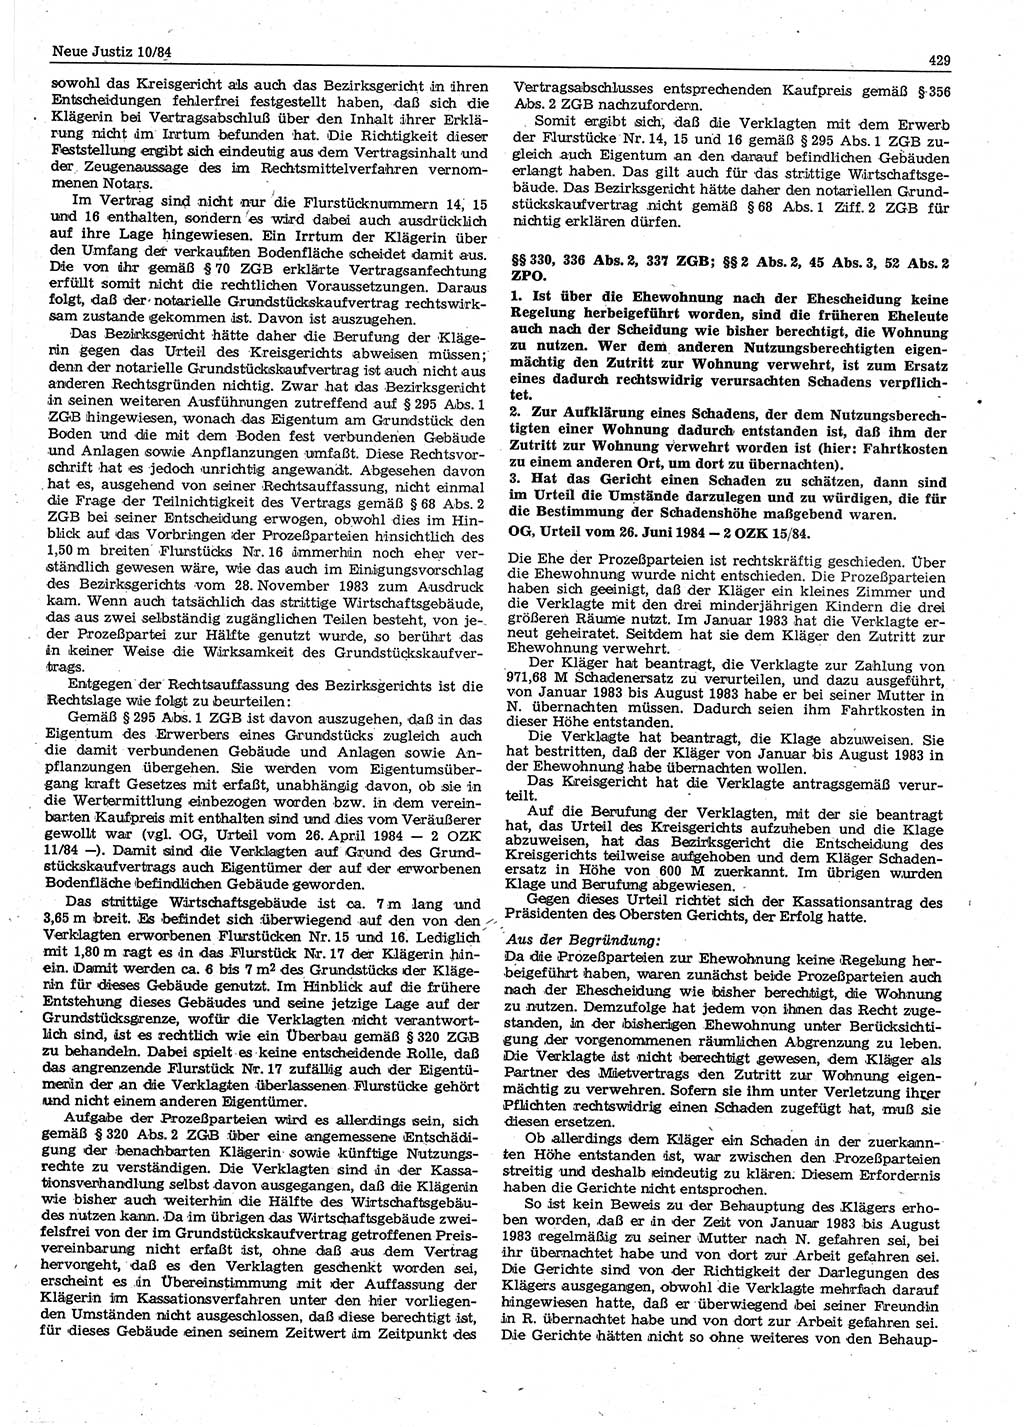 Neue Justiz (NJ), Zeitschrift für sozialistisches Recht und Gesetzlichkeit [Deutsche Demokratische Republik (DDR)], 38. Jahrgang 1984, Seite 429 (NJ DDR 1984, S. 429)